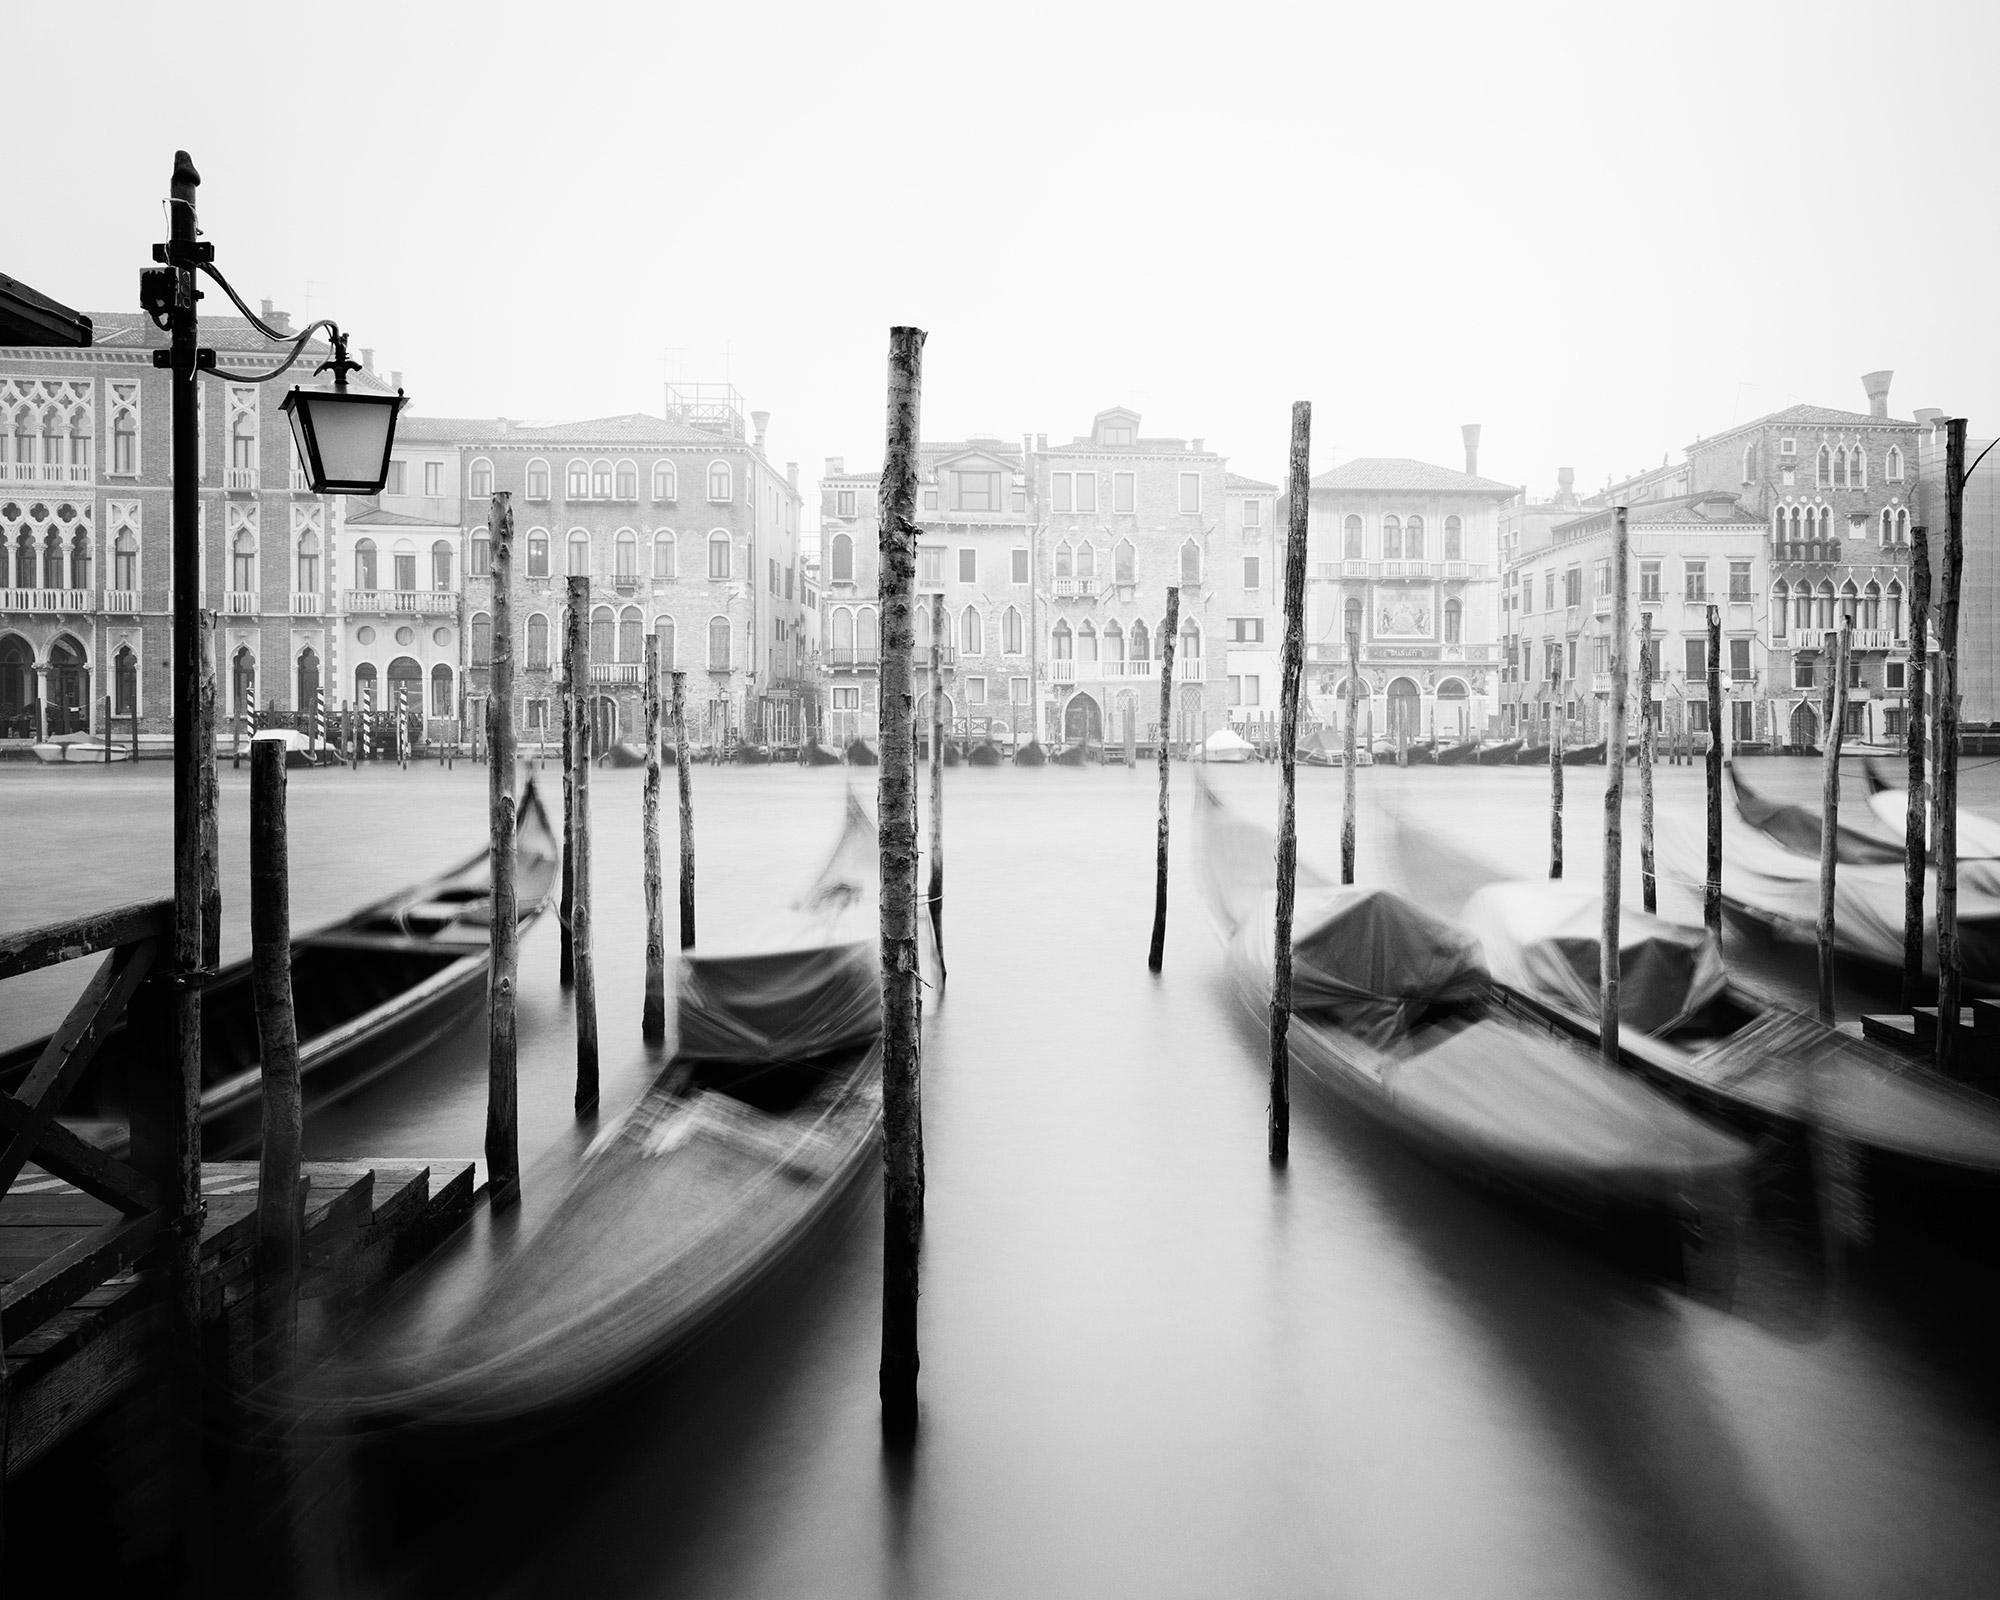 Black and White Photograph de Gerald Berghammer - Góndola, Canal Grande, Venecia, fotografía artística en blanco y negro de paisajes urbanos